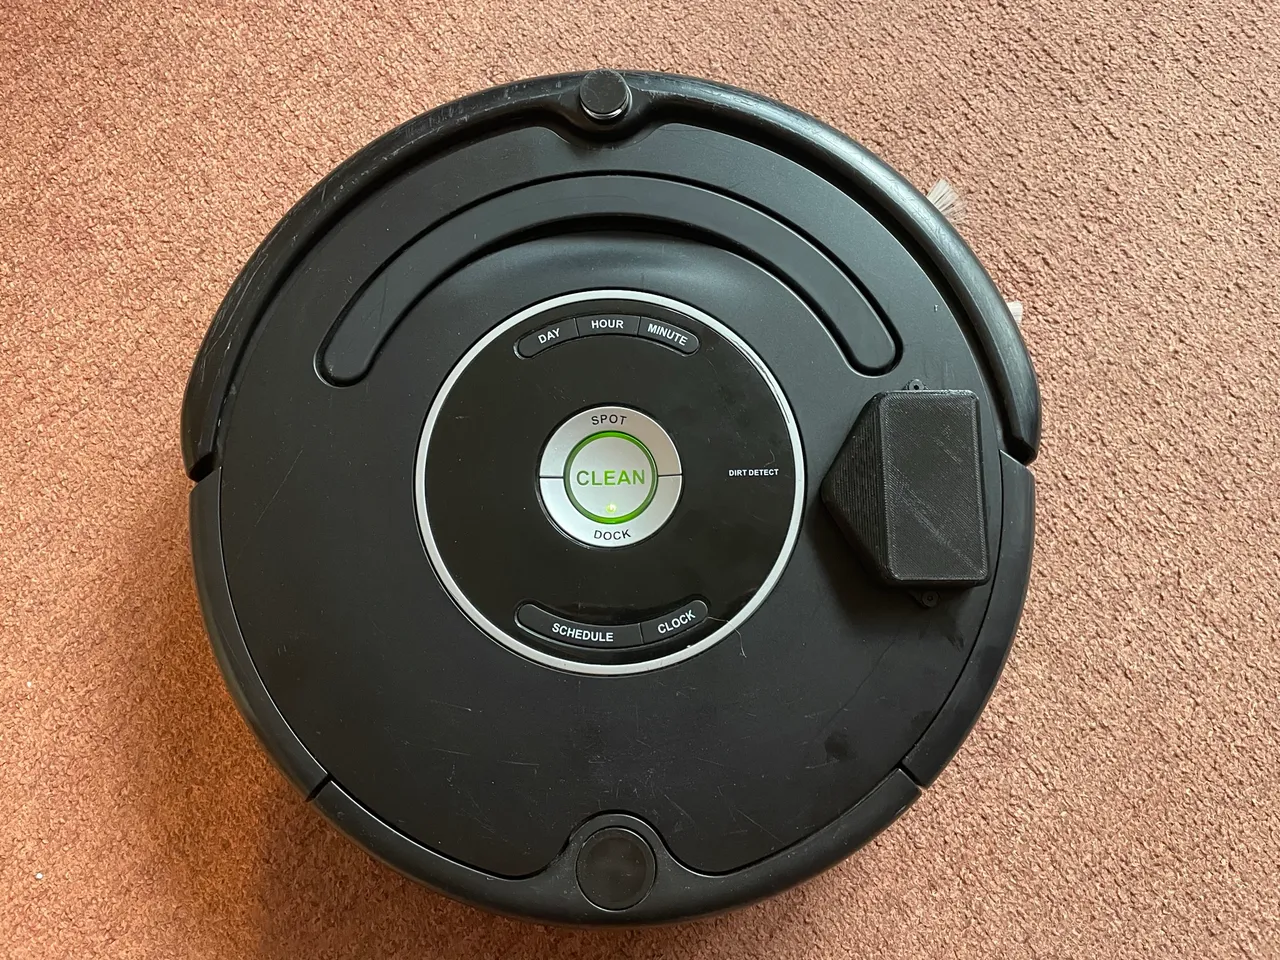 iRobot Roomba 581 Robot Vacuum Cleaner 3D model - Download